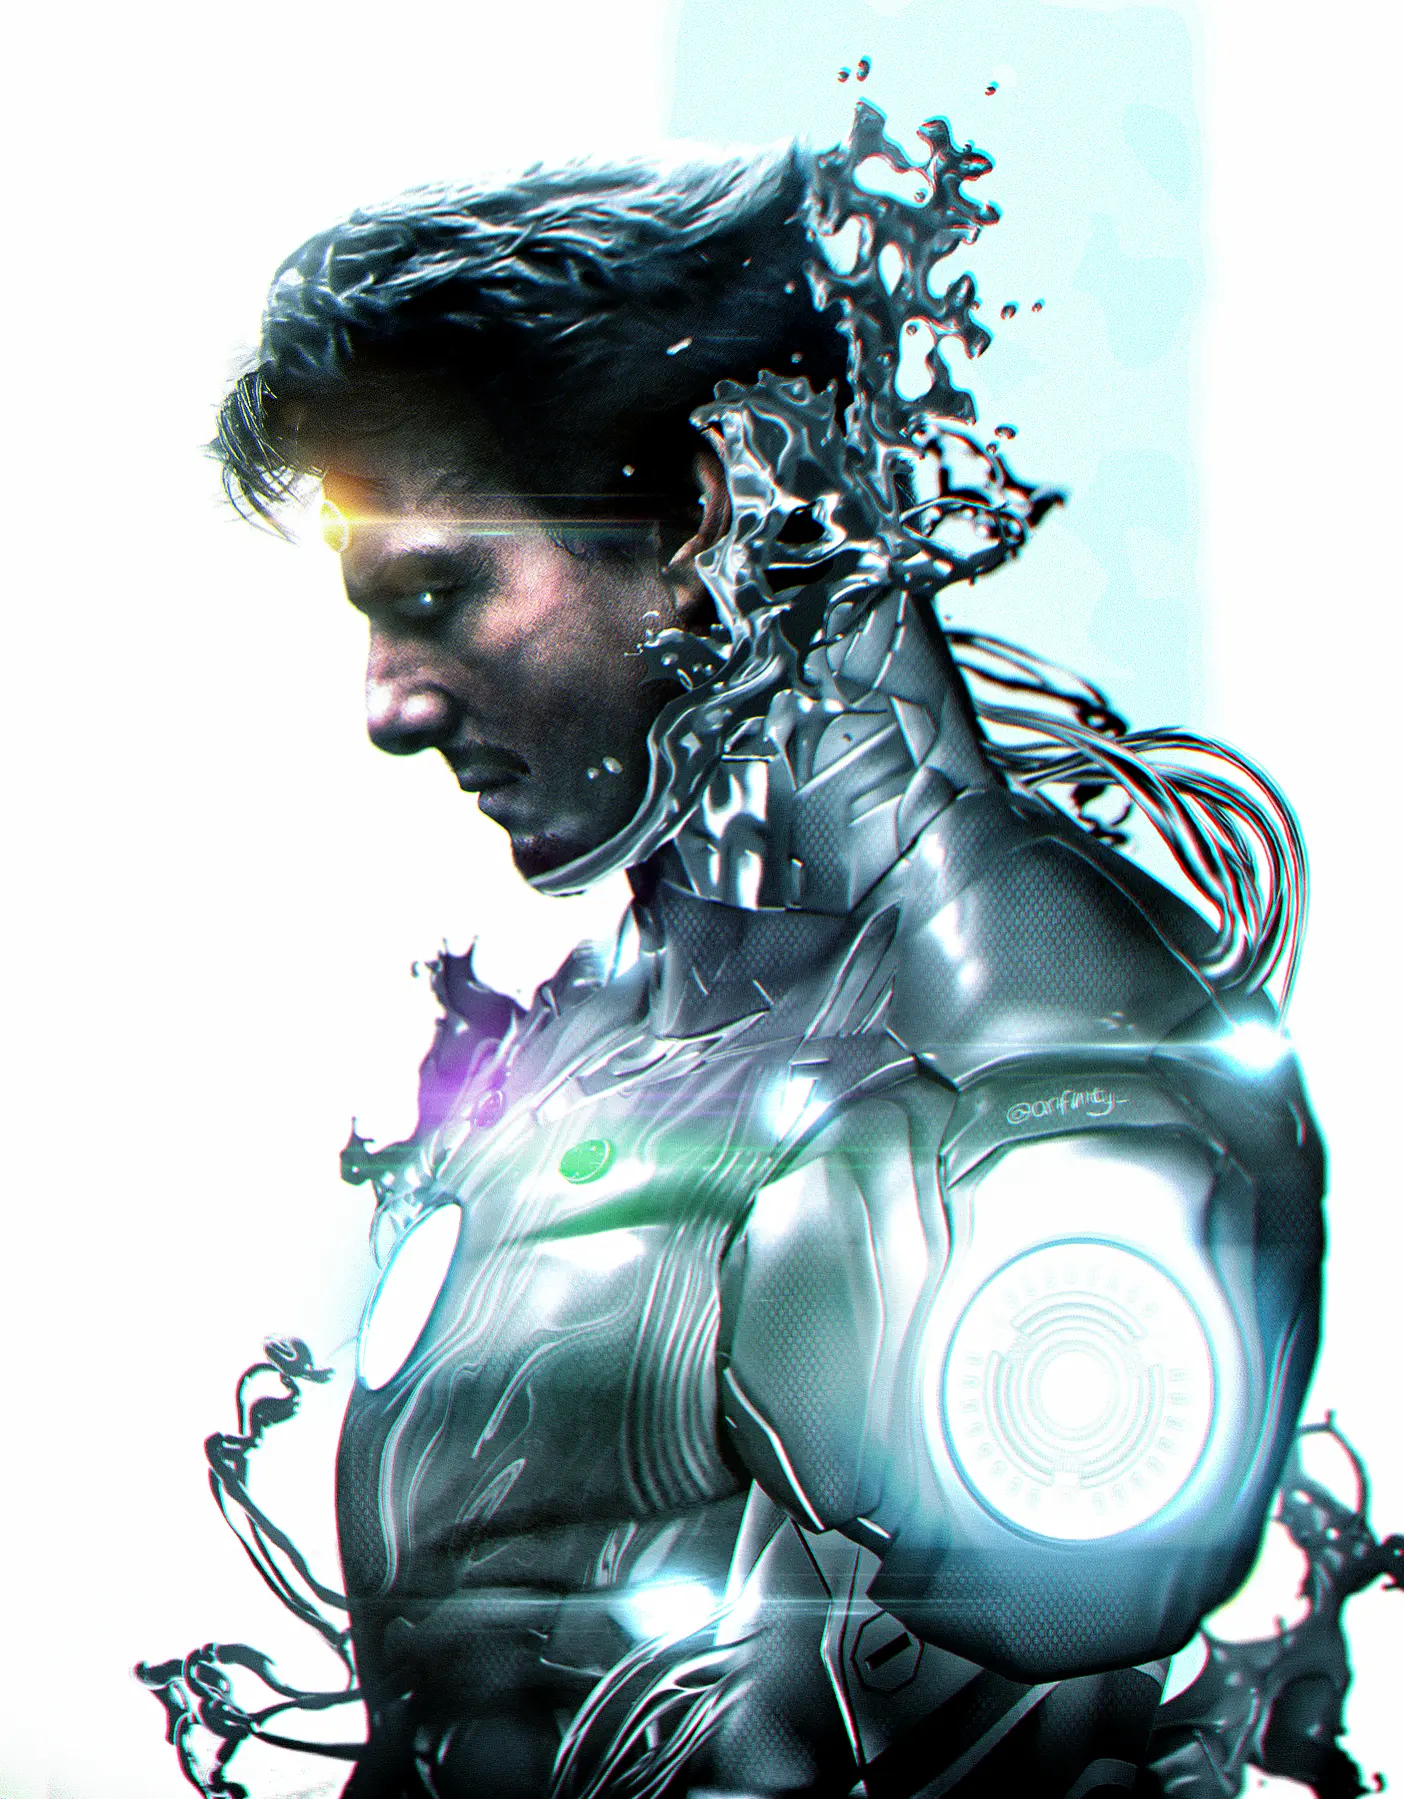 Arte imagina o Tom Cruise como Homem de Ferro.